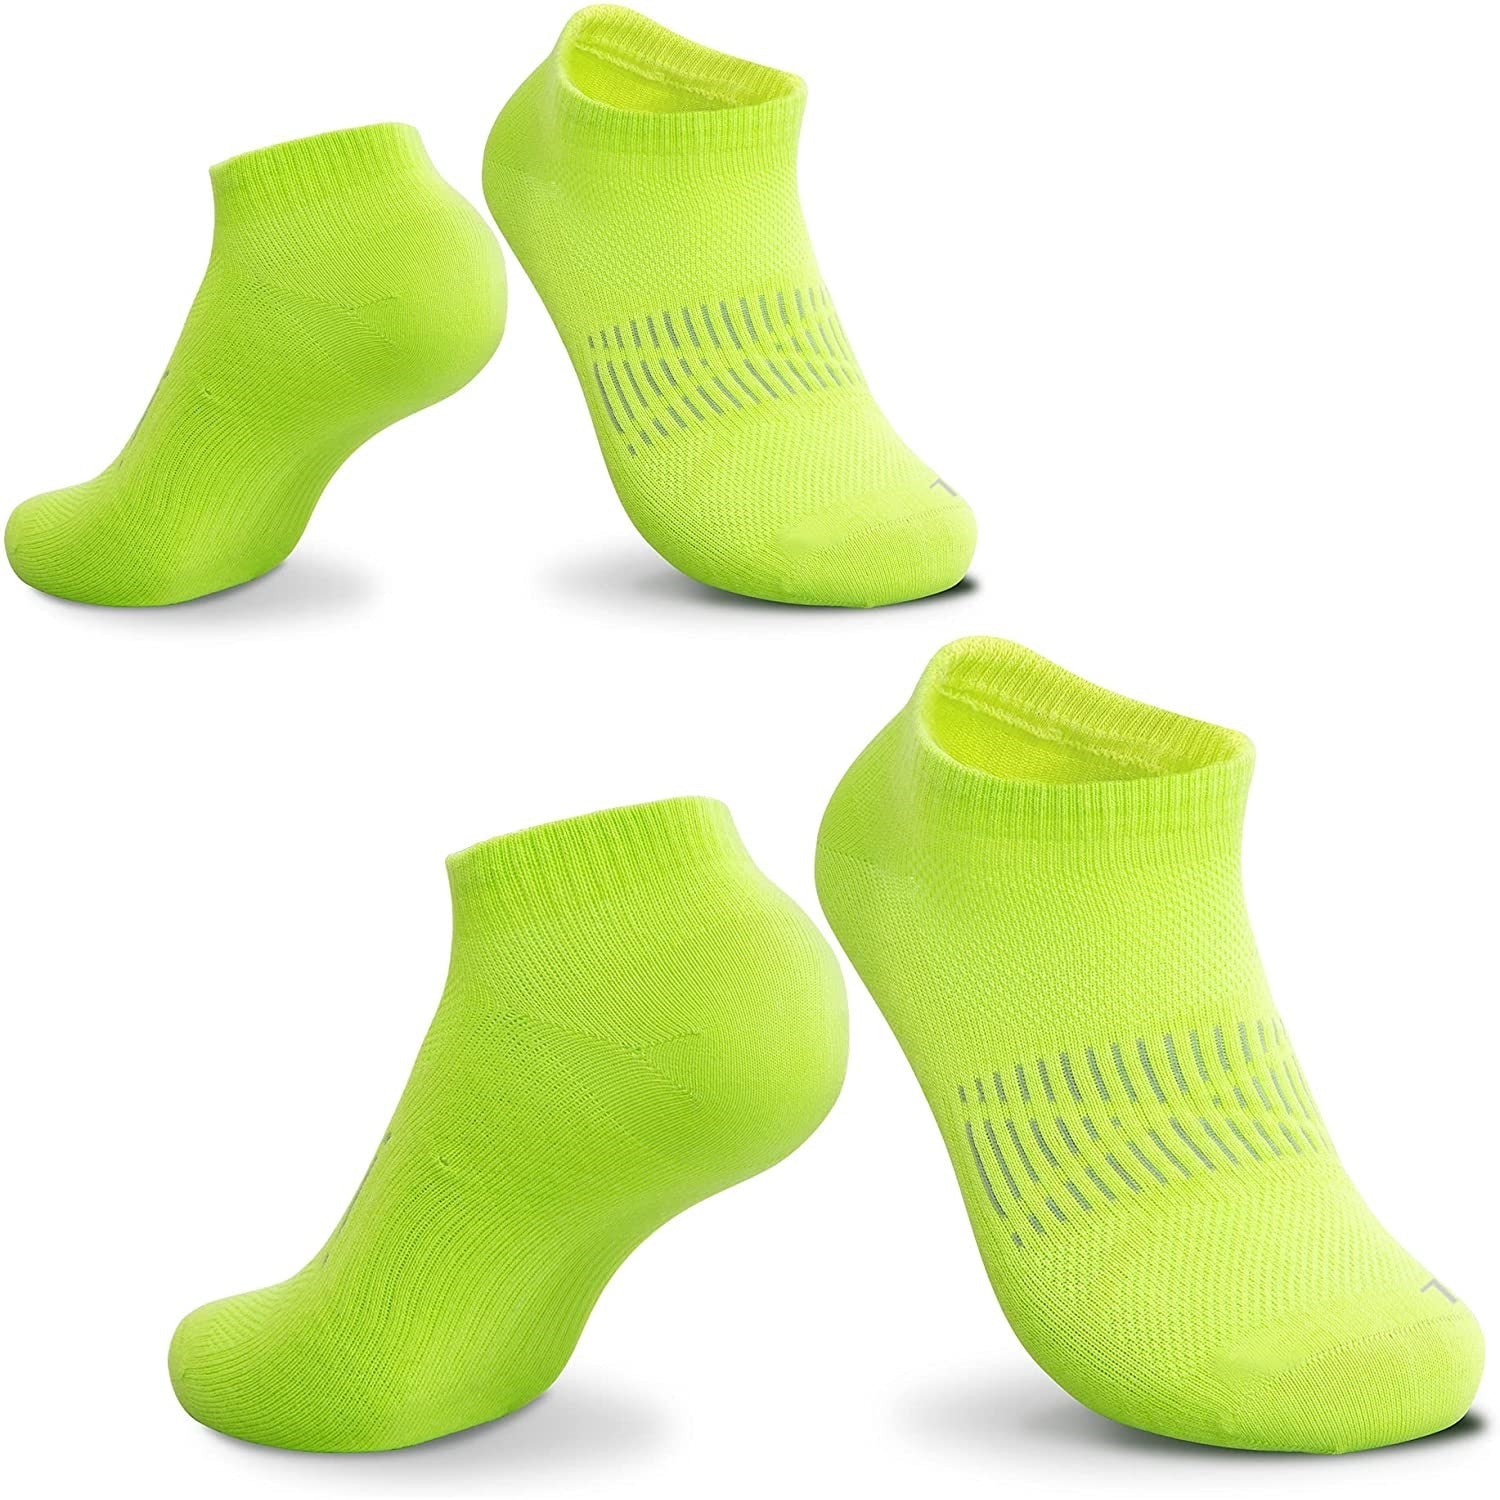 https://www.akasooutdoors.com/cdn/shop/products/akaso-rc011-non-slip-ankle-socks-for-men-women-163732.jpg?v=1642042142